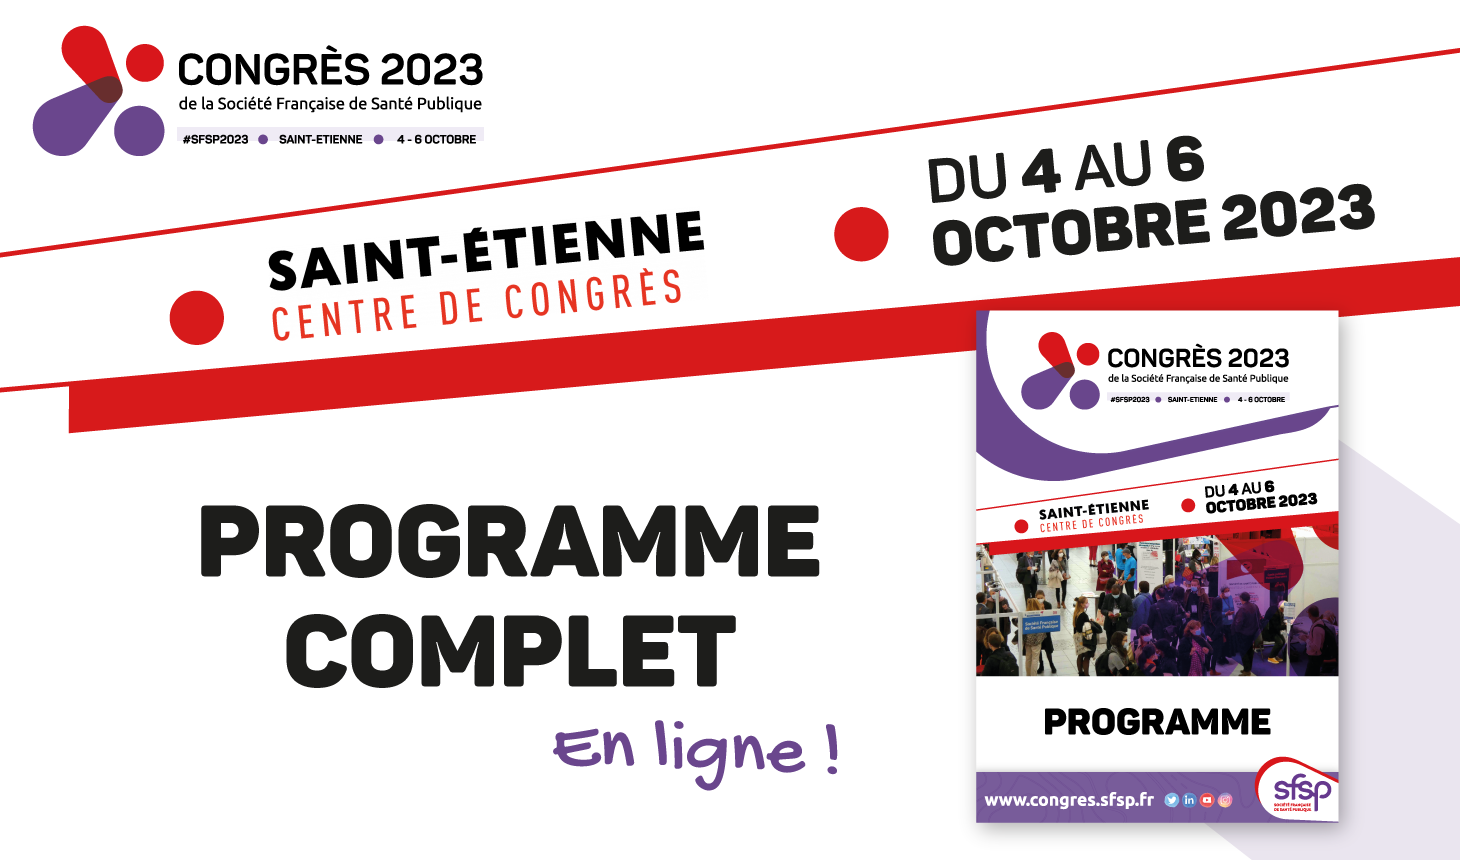 La HAS au congrès de la société française de santé publique (SFSP) du 4 au 6 octobre 2023